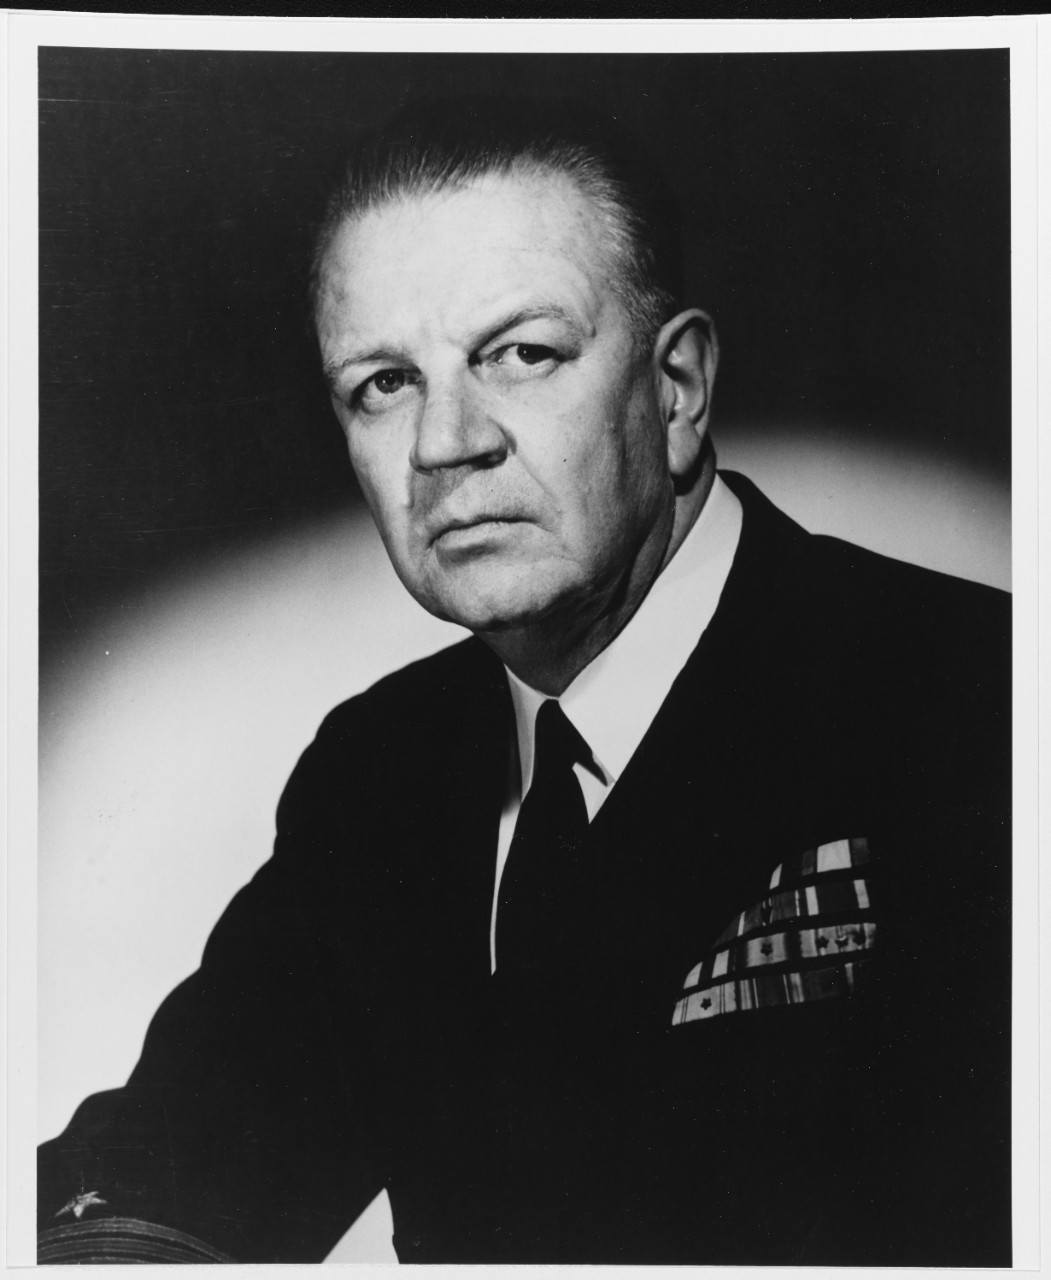 Photo #: 80-G-707159  Vice Admiral William M. Fechteler, USN